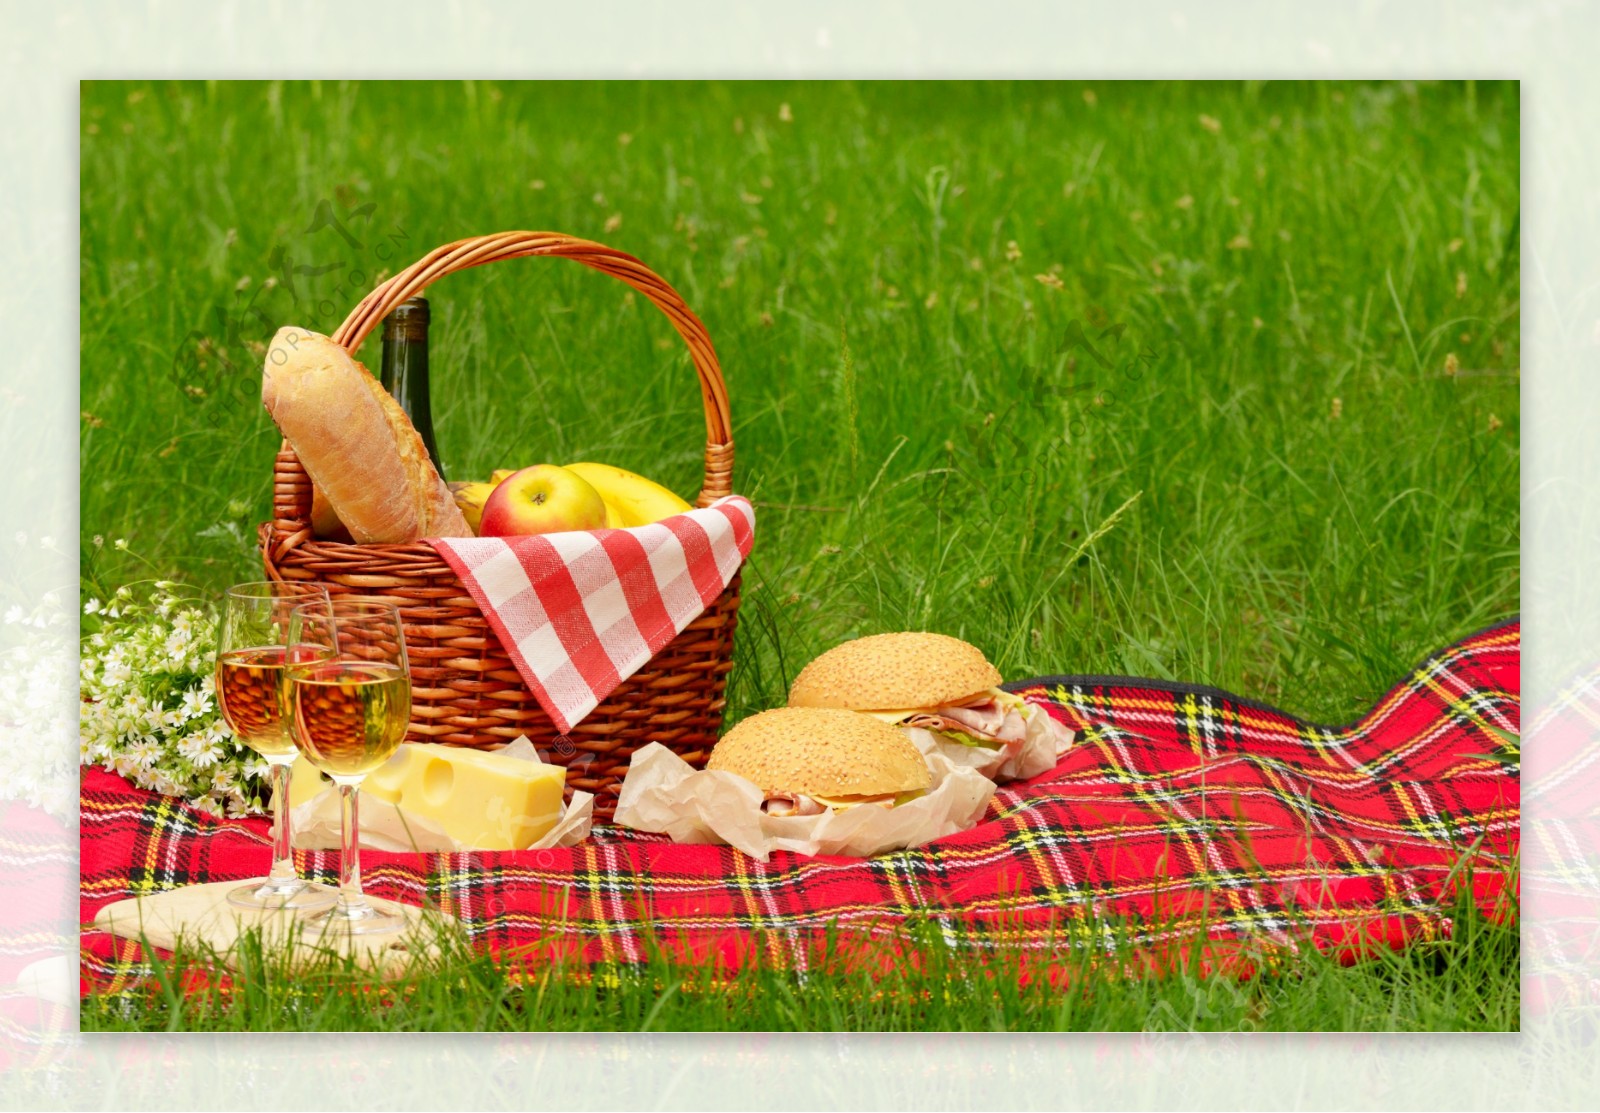 面包野餐图片